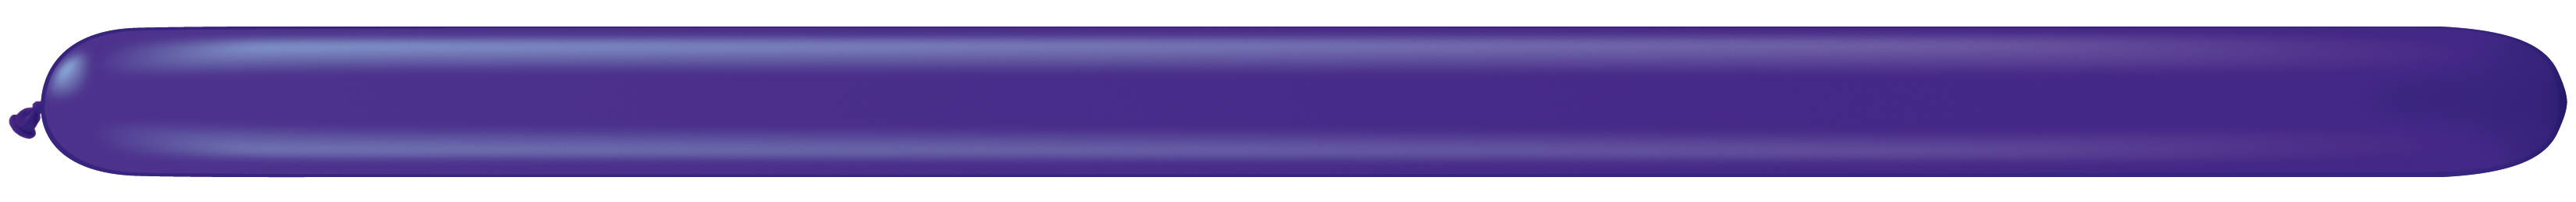 Ballons Qualatex pour Modeling et Sculpture Quartz purple Q160 Poche de 100 ballons